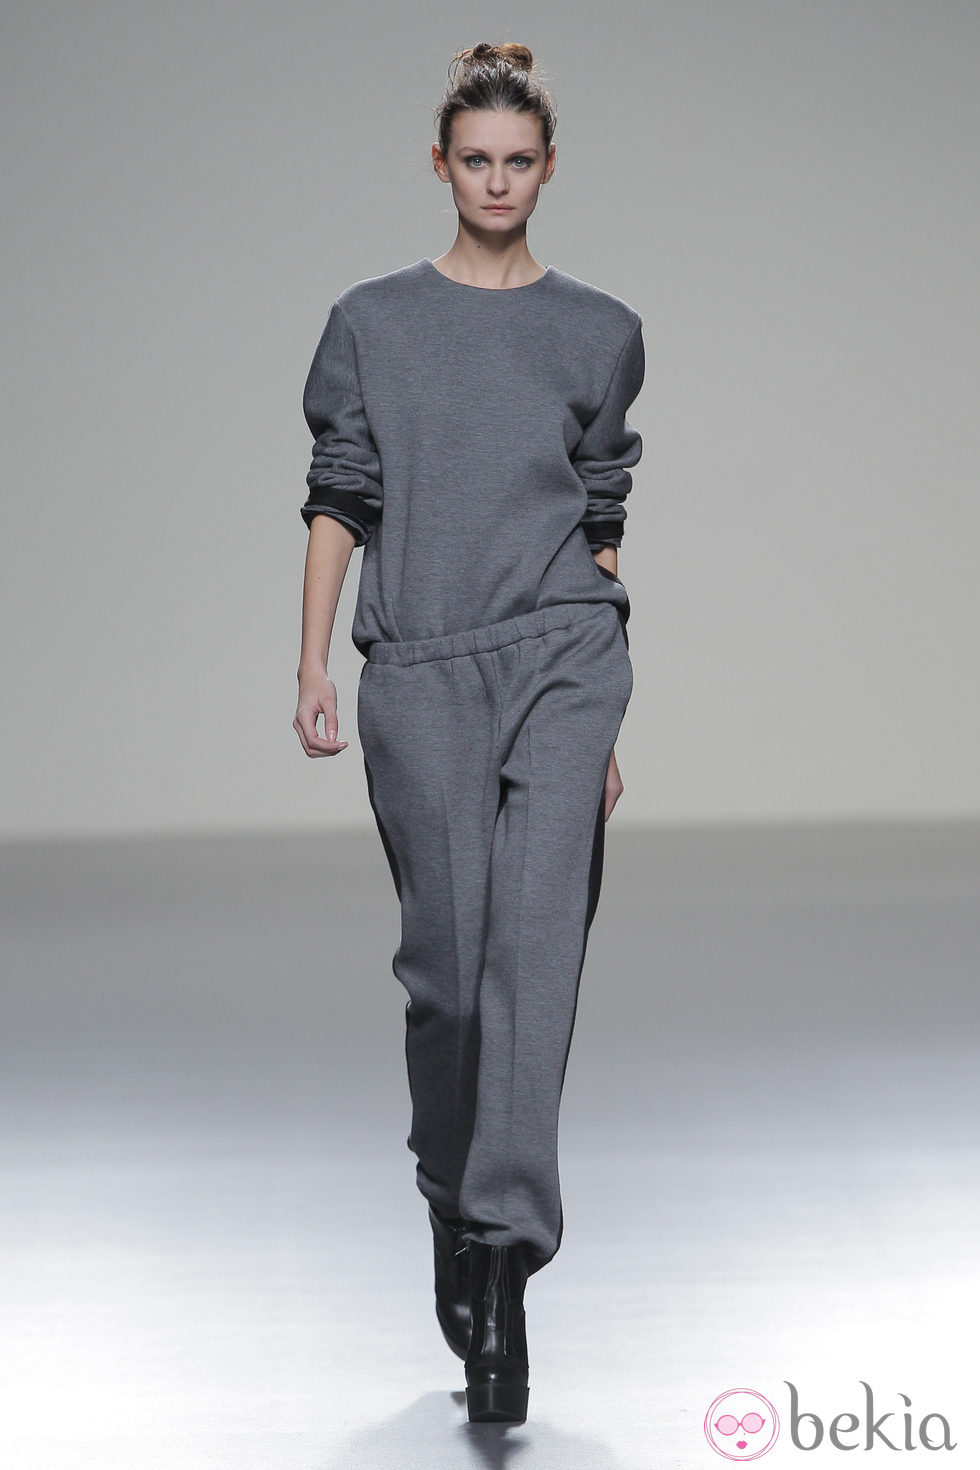 Mono gris de la colección otoño/invierno 2013/2014 de Manémané en Madrid Fashion Week